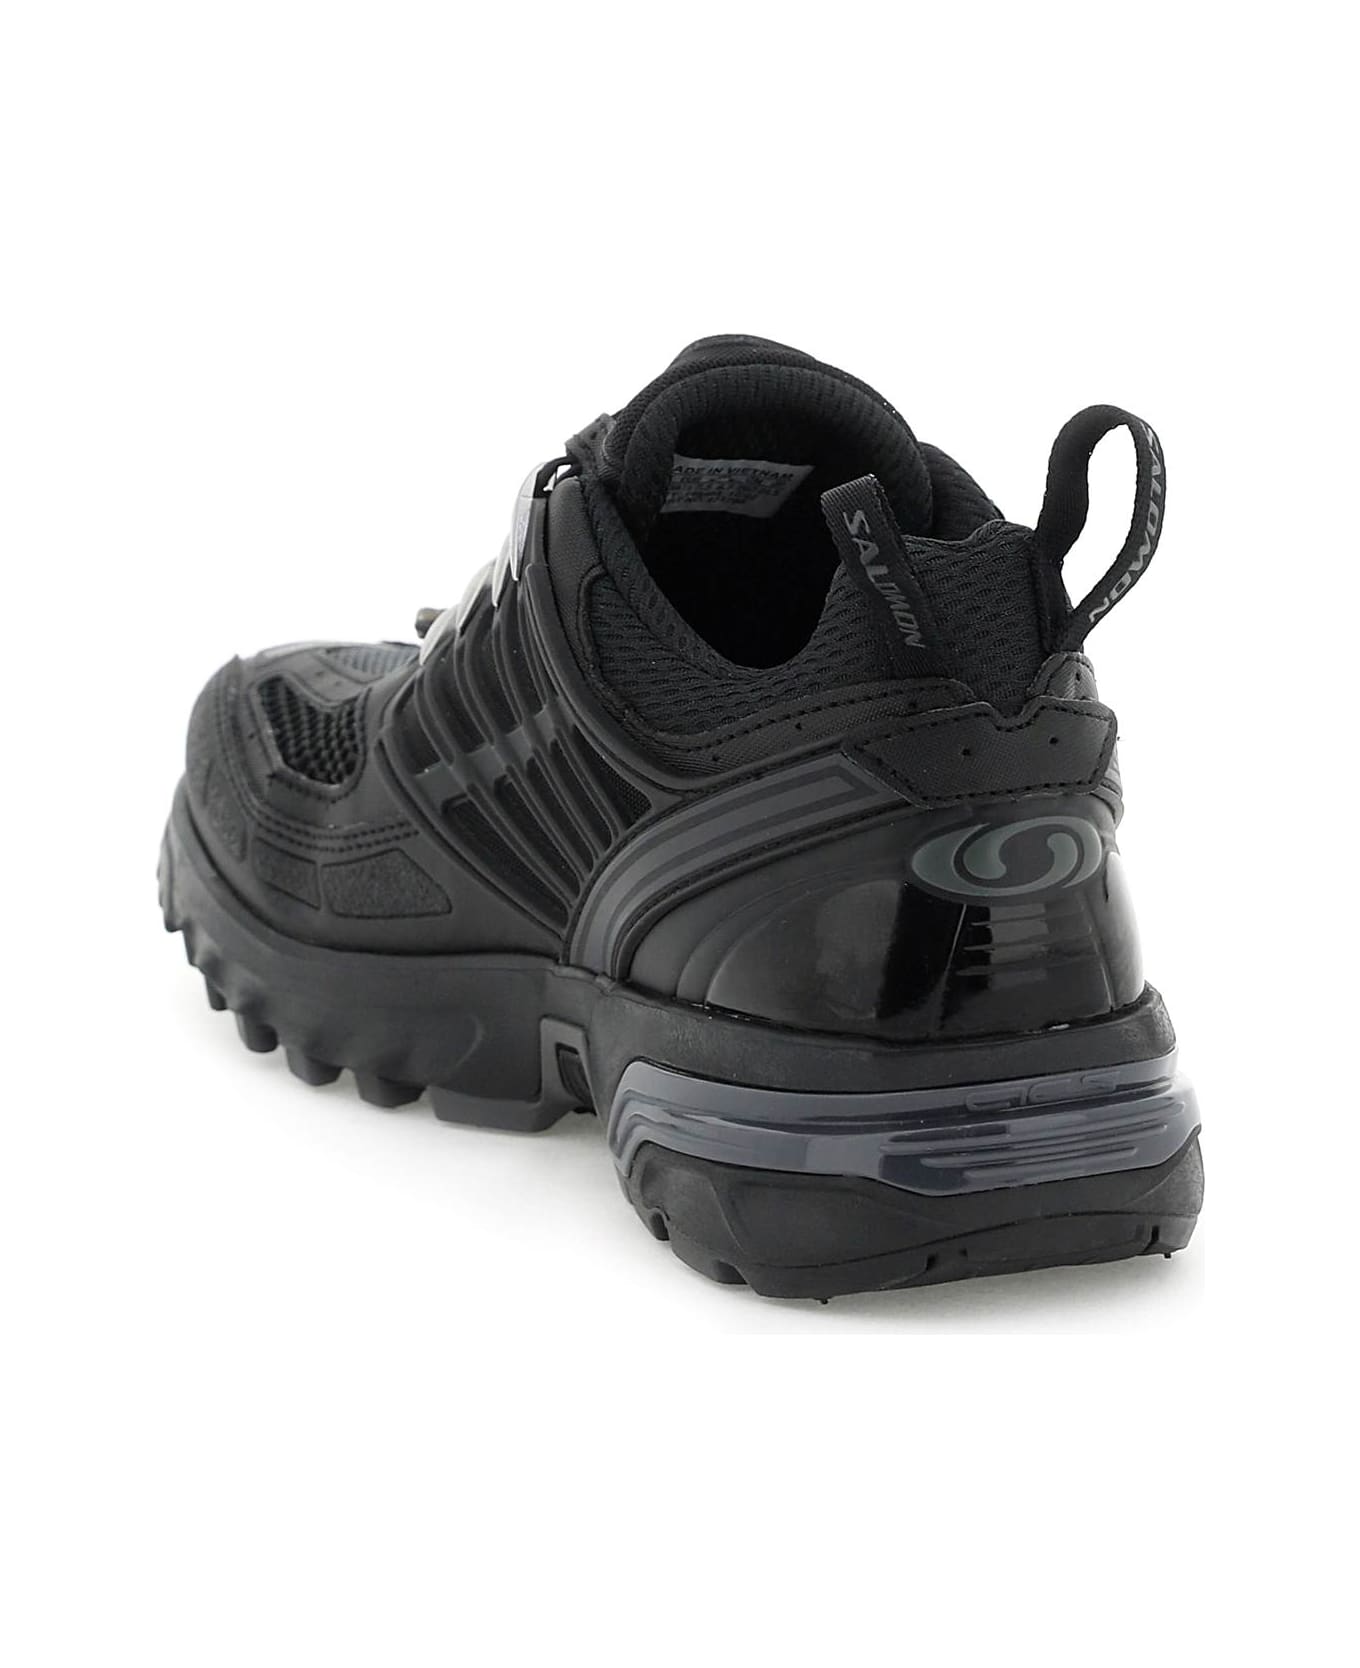 Salomon Acs Pro Sneakers - BLACK BLACK BLACK (Black)